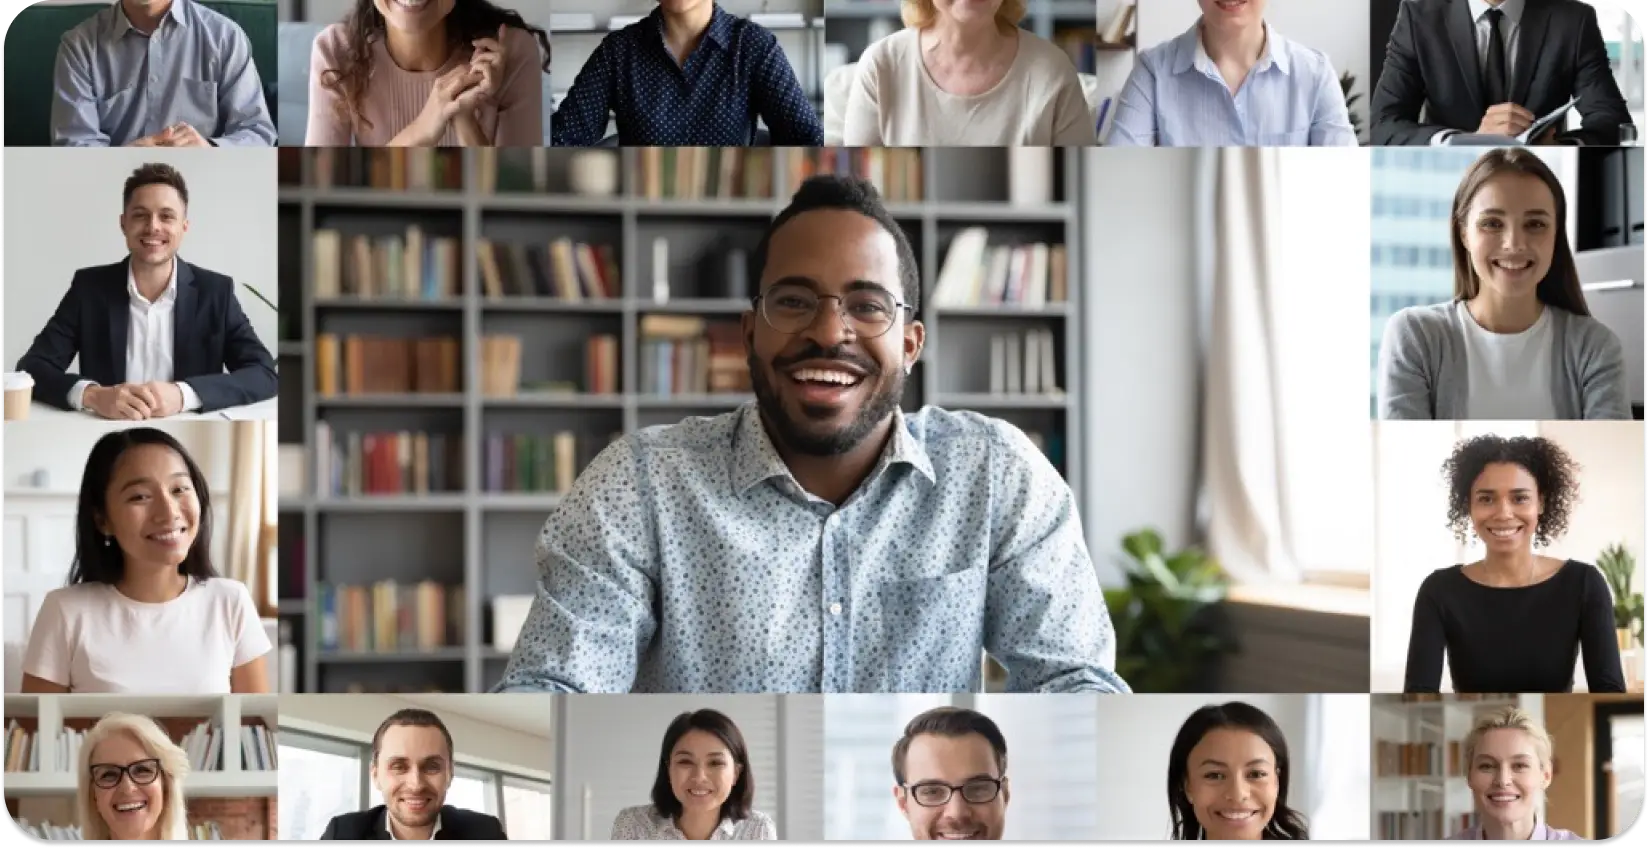 Colagem de diversos profissionais em uma reunião virtual, mostrando a inclusão no local de trabalho.